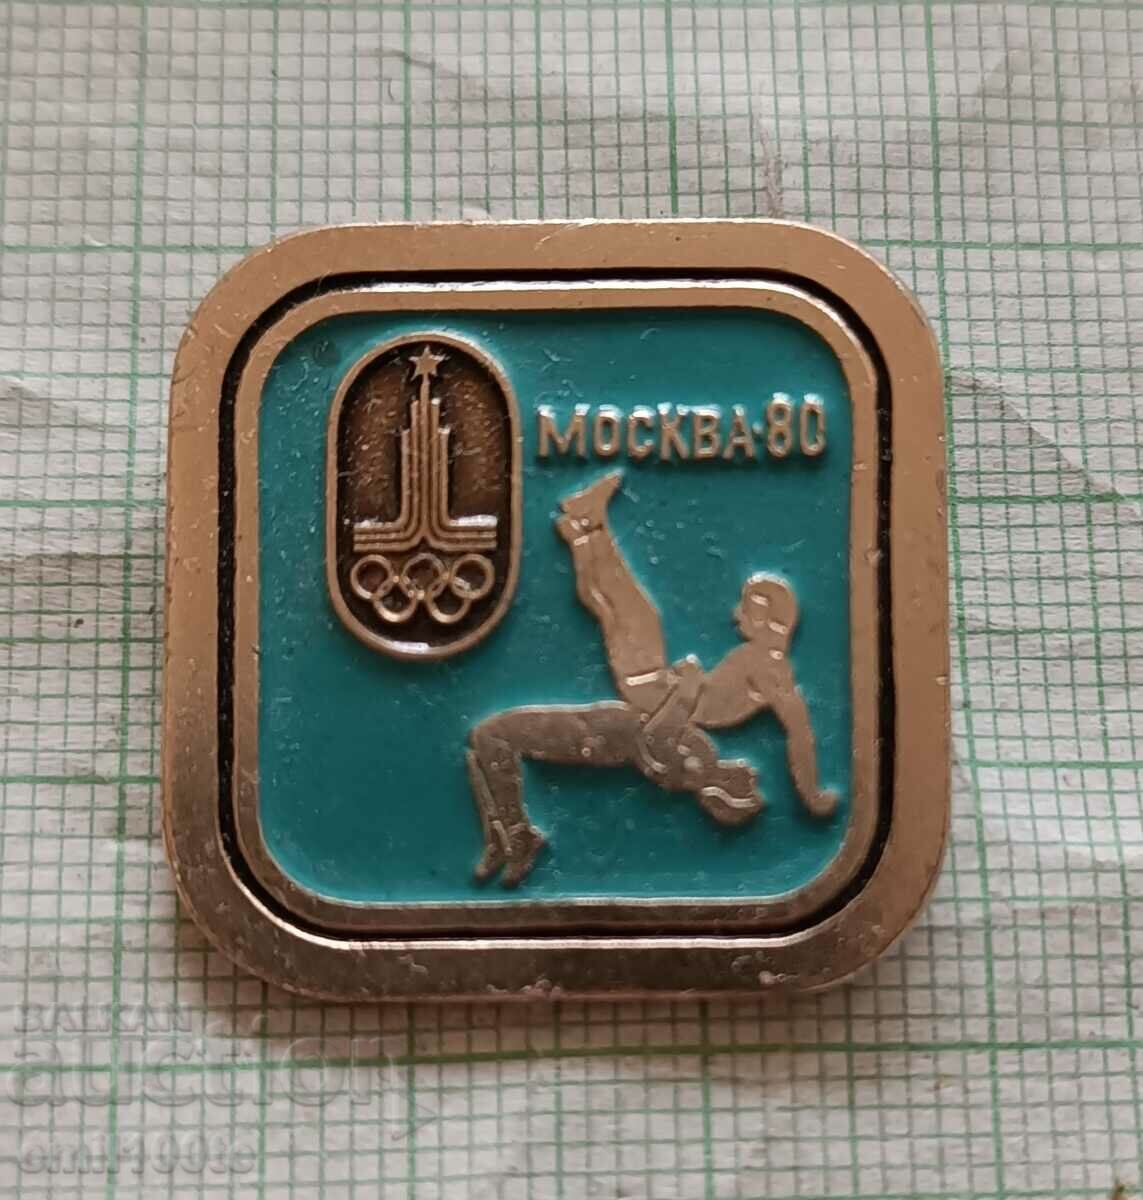 Σήμα - Ολυμπιακοί Αγώνες Μόσχα 1980 Πάλη